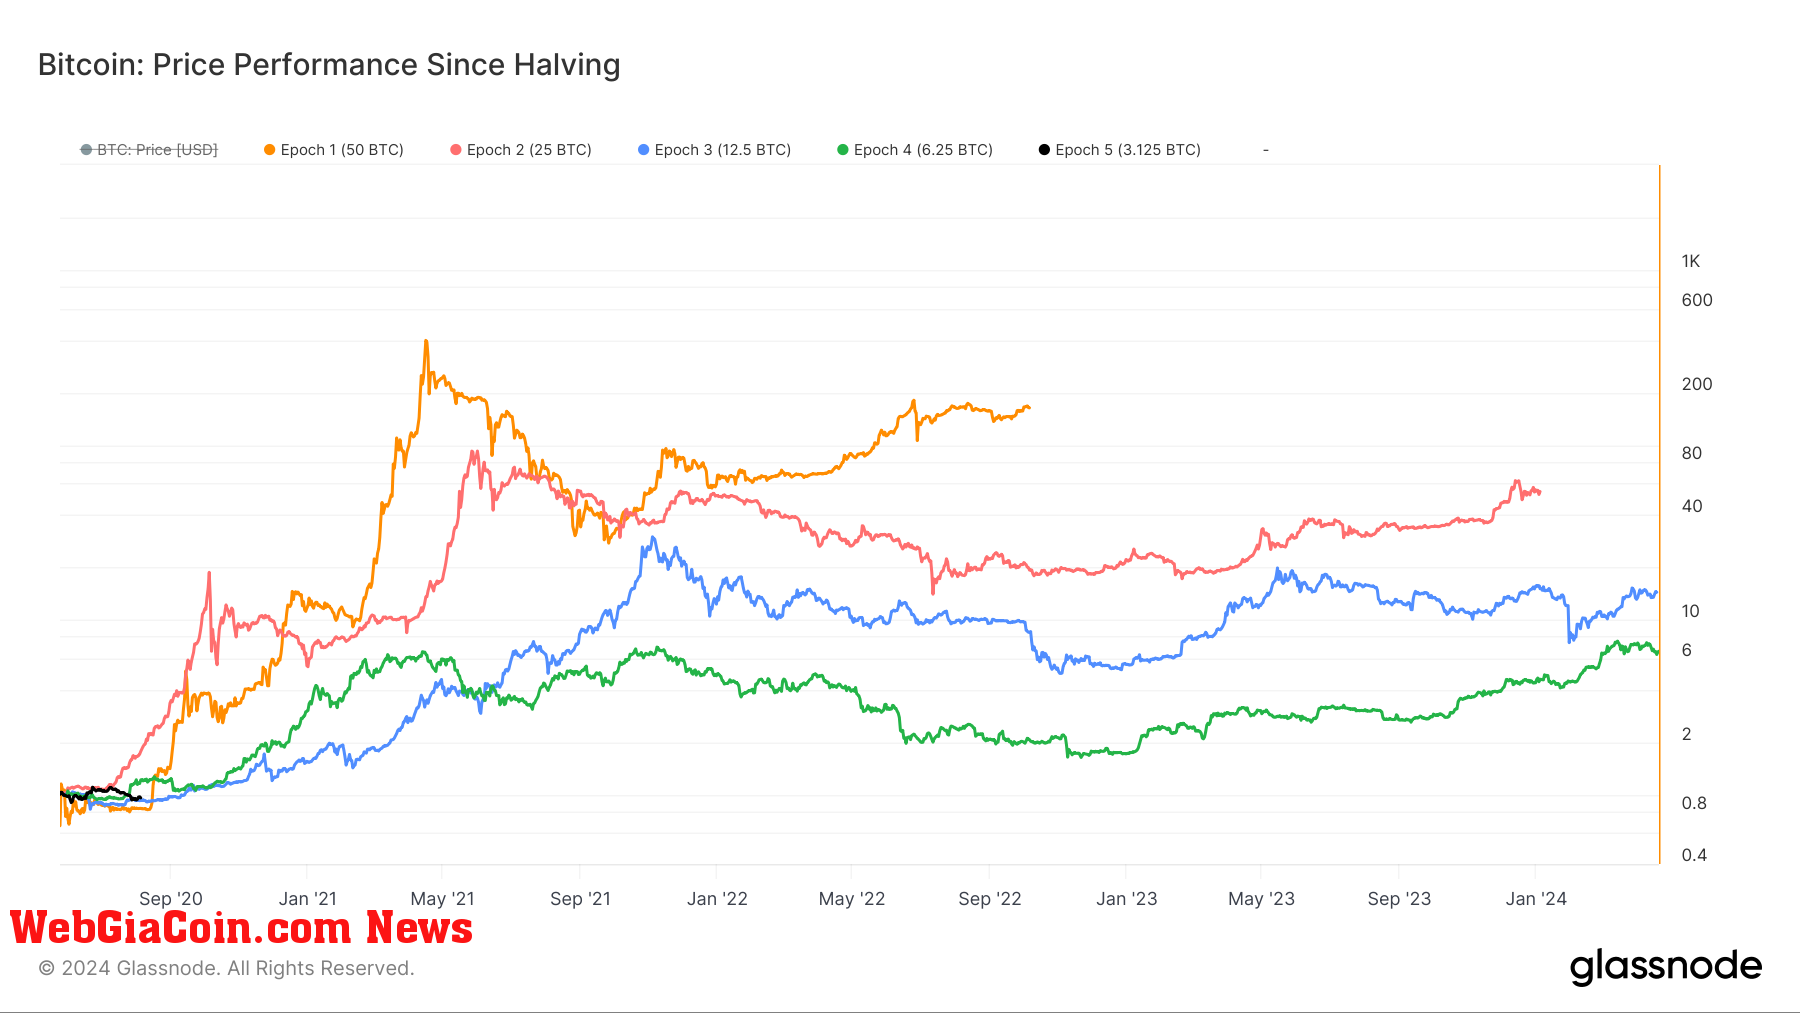 Xu hướng giá bitcoin sau Halving_: Dữ liệu lịch sử chỉ ra sự biến động theo chu kỳ